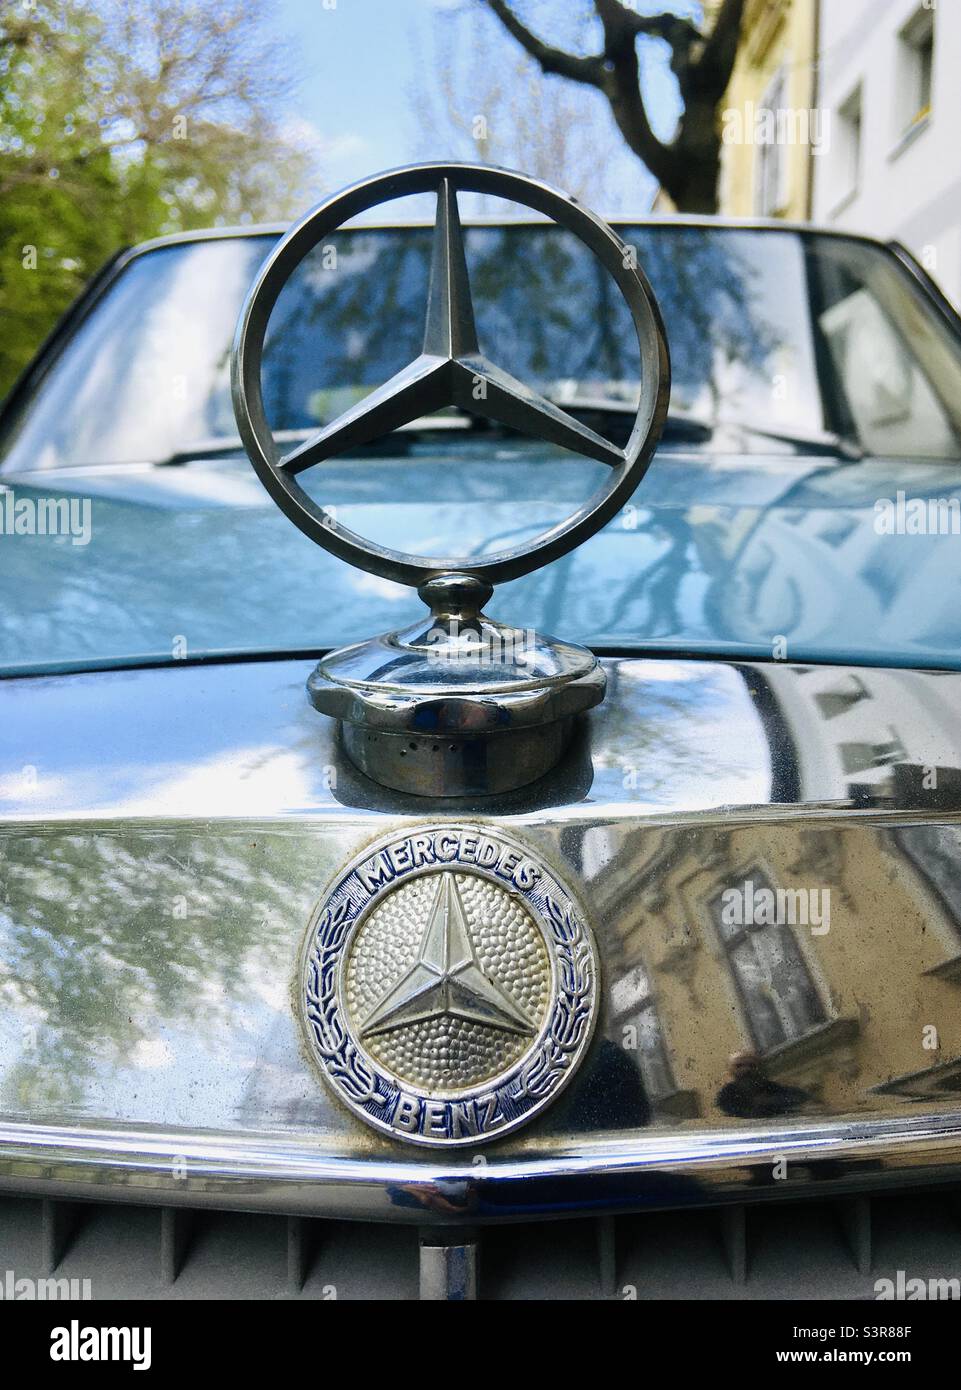 Mercedes benz 240 d immagini e fotografie stock ad alta risoluzione - Alamy